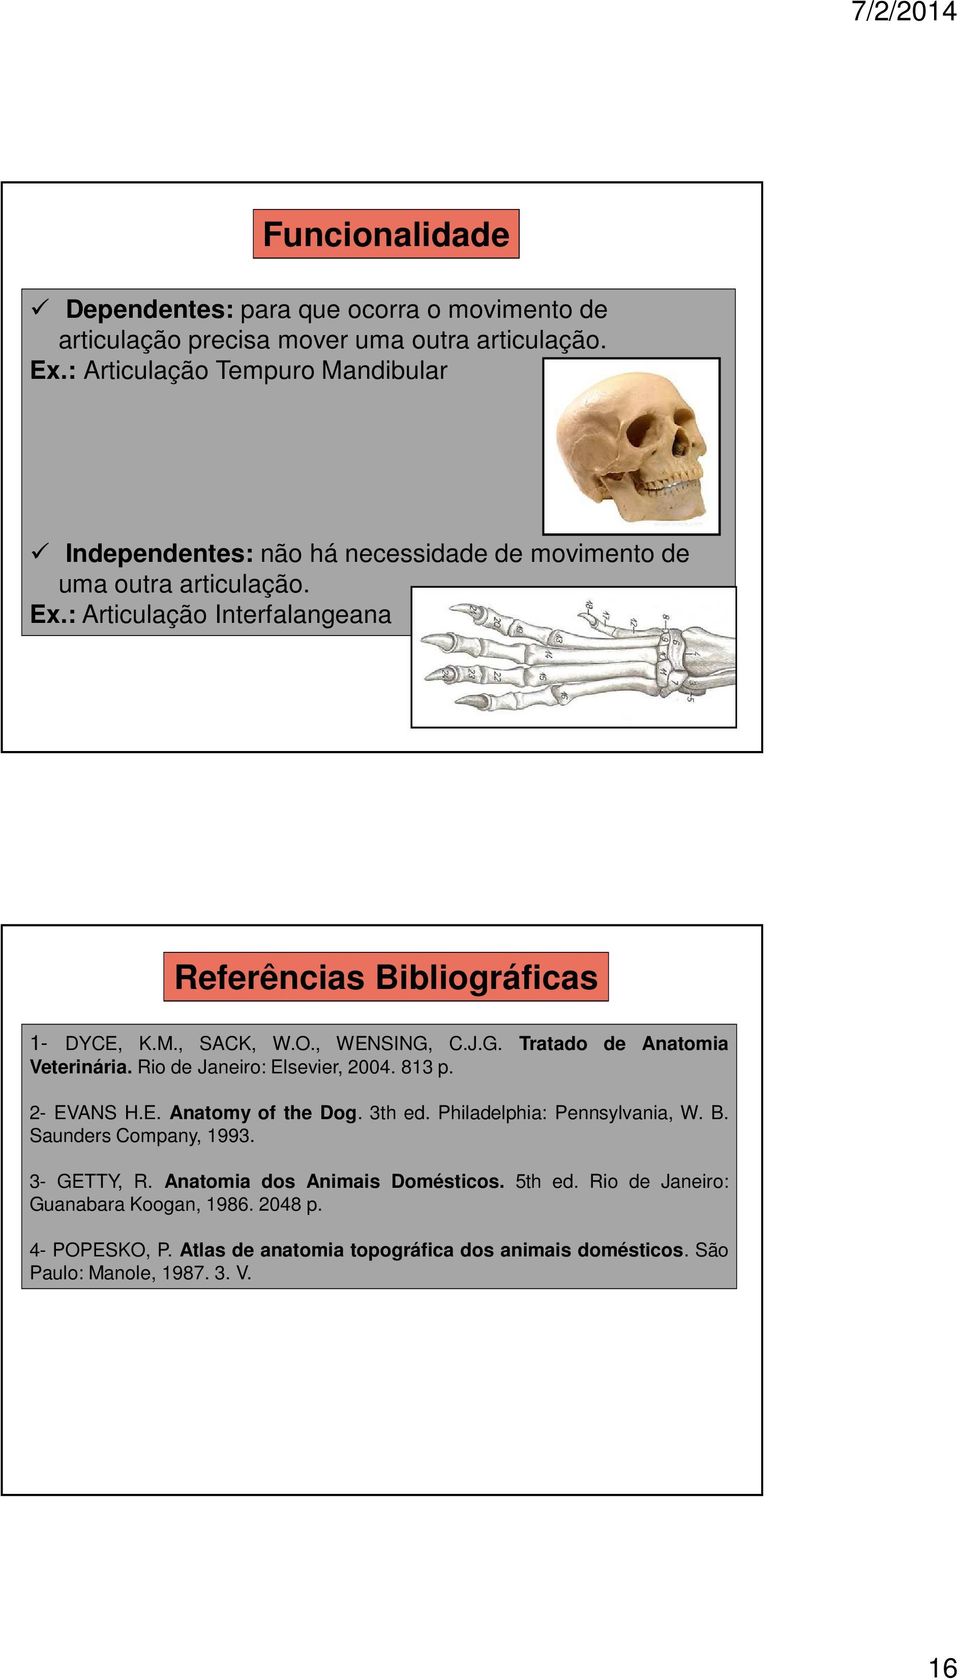 : Articulação Interfalangeana Referências Bibliográficas 1- DYCE, K.M., SACK, W.O., WENSING, C.J.G. Tratado de Anatomia Veterinária. Rio de Janeiro: Elsevier, 2004. 813 p.